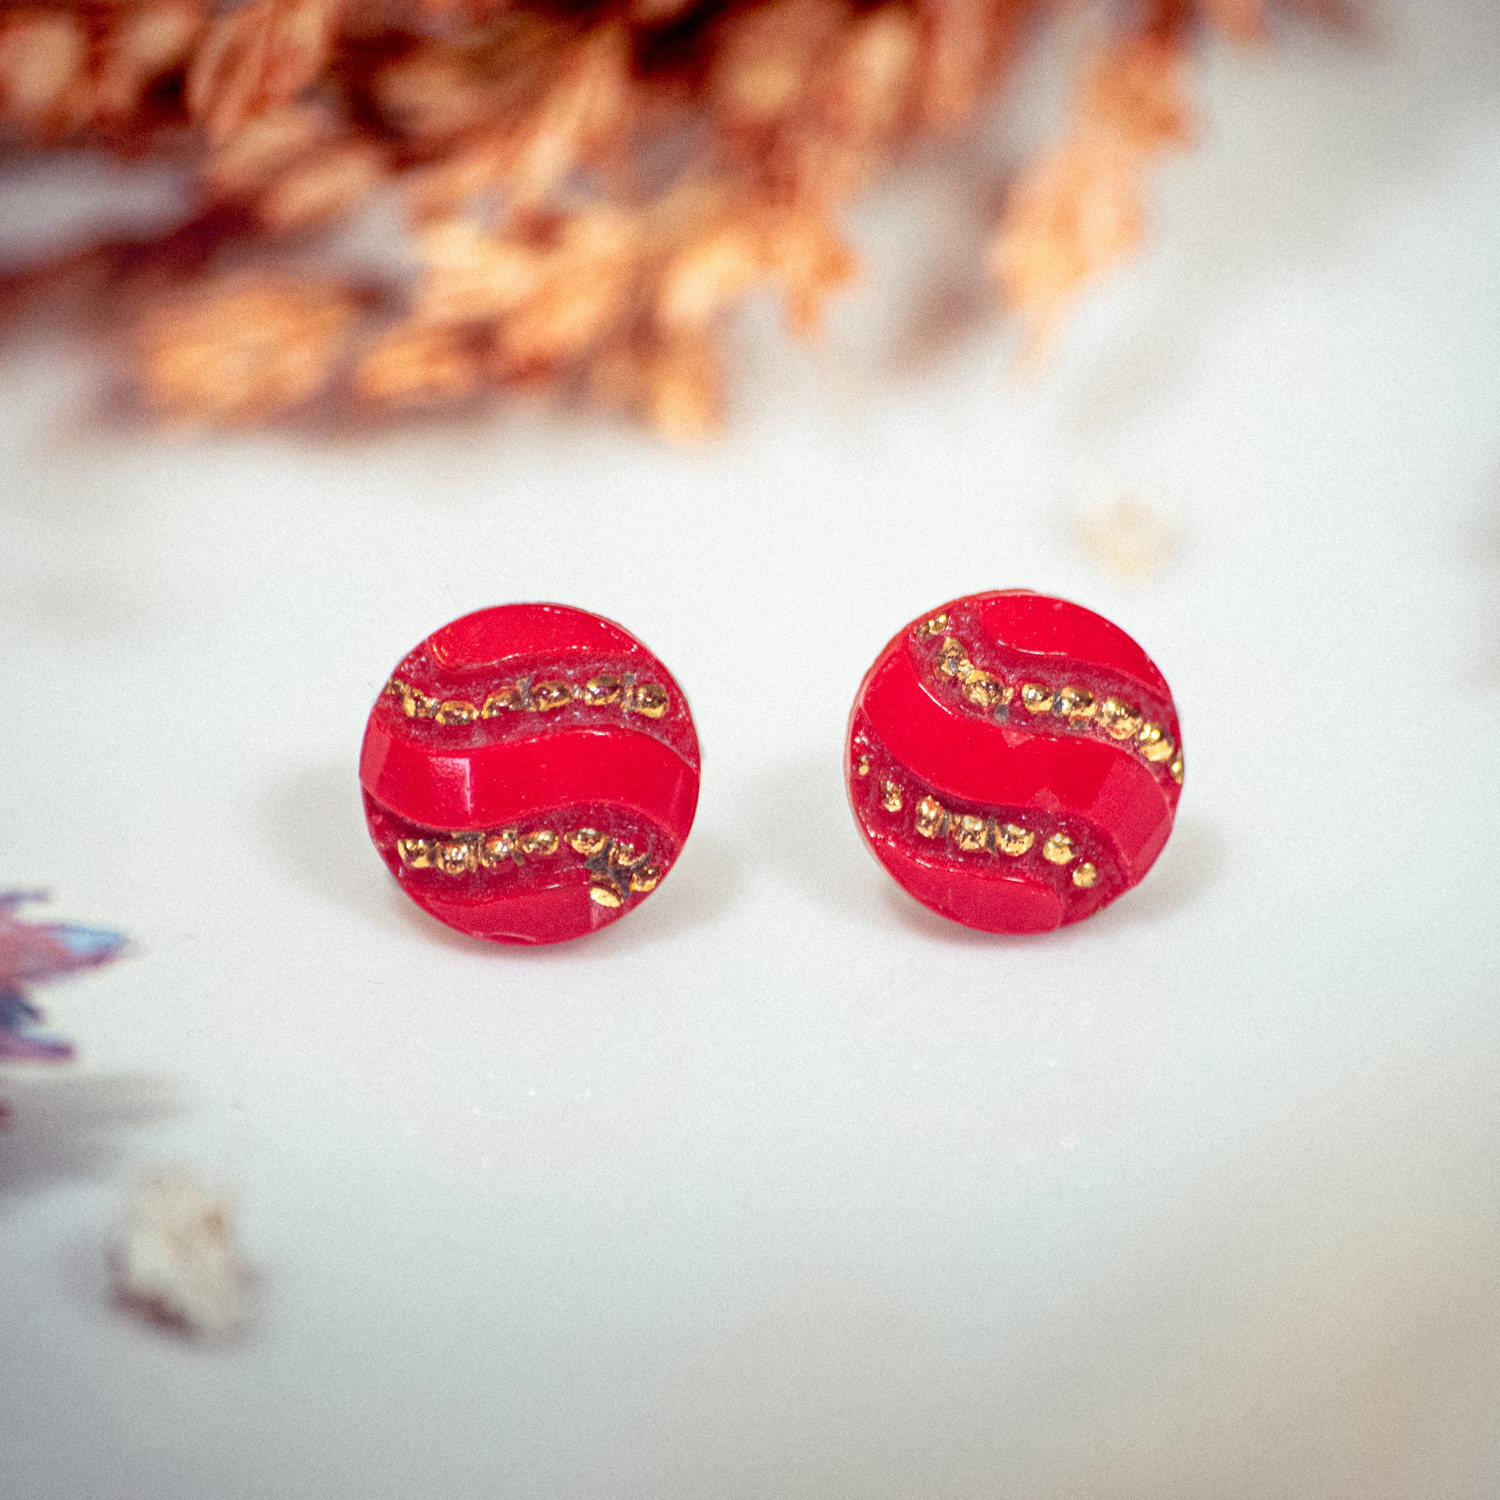 Assuna – Boucles d’oreilles puces rouge et or – bouton ancien 1940 – clous d’oreilles acier inoxydable